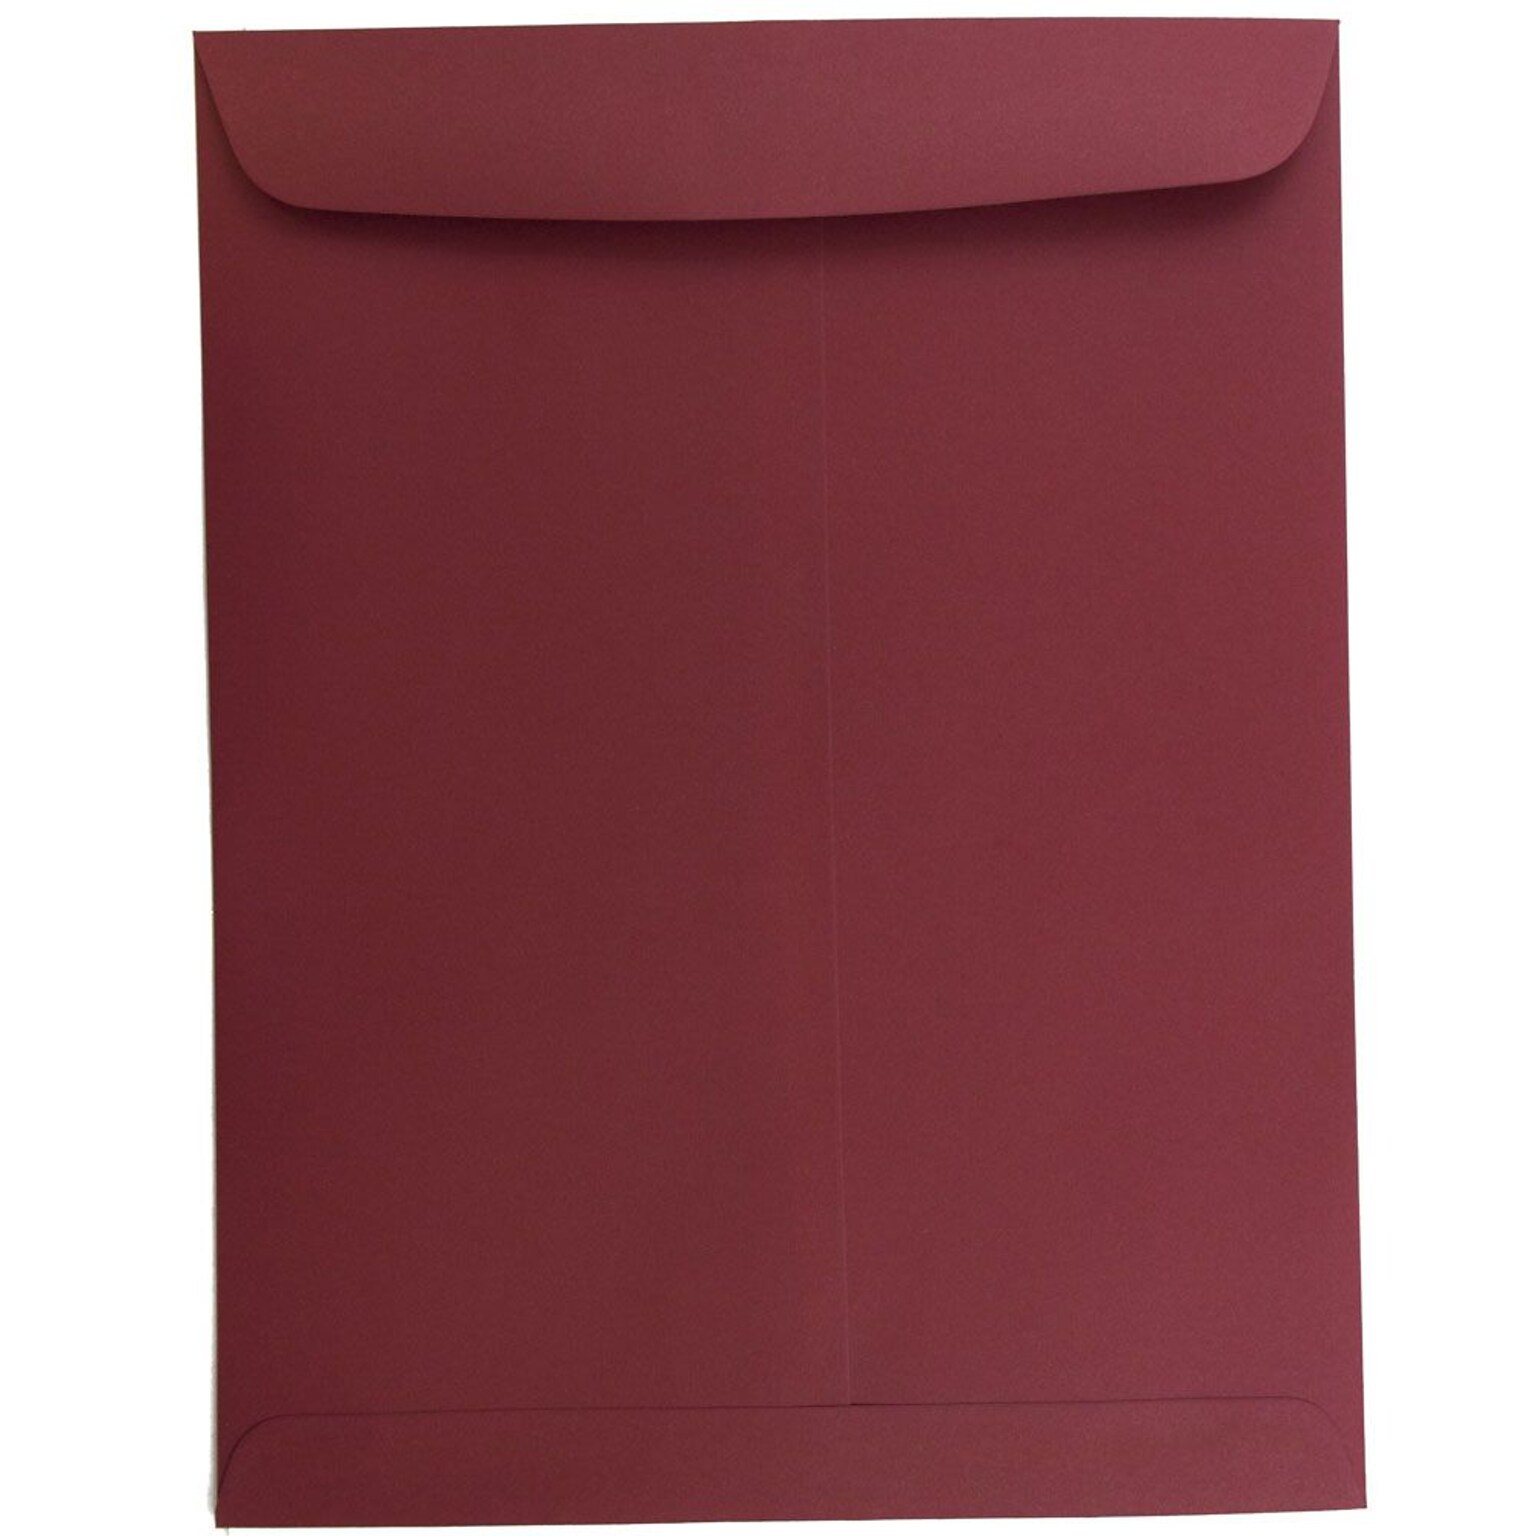 JAM Paper 10 x 13 Open End Catalog Envelopes, Dark Red, 10/Pack (31287541B)